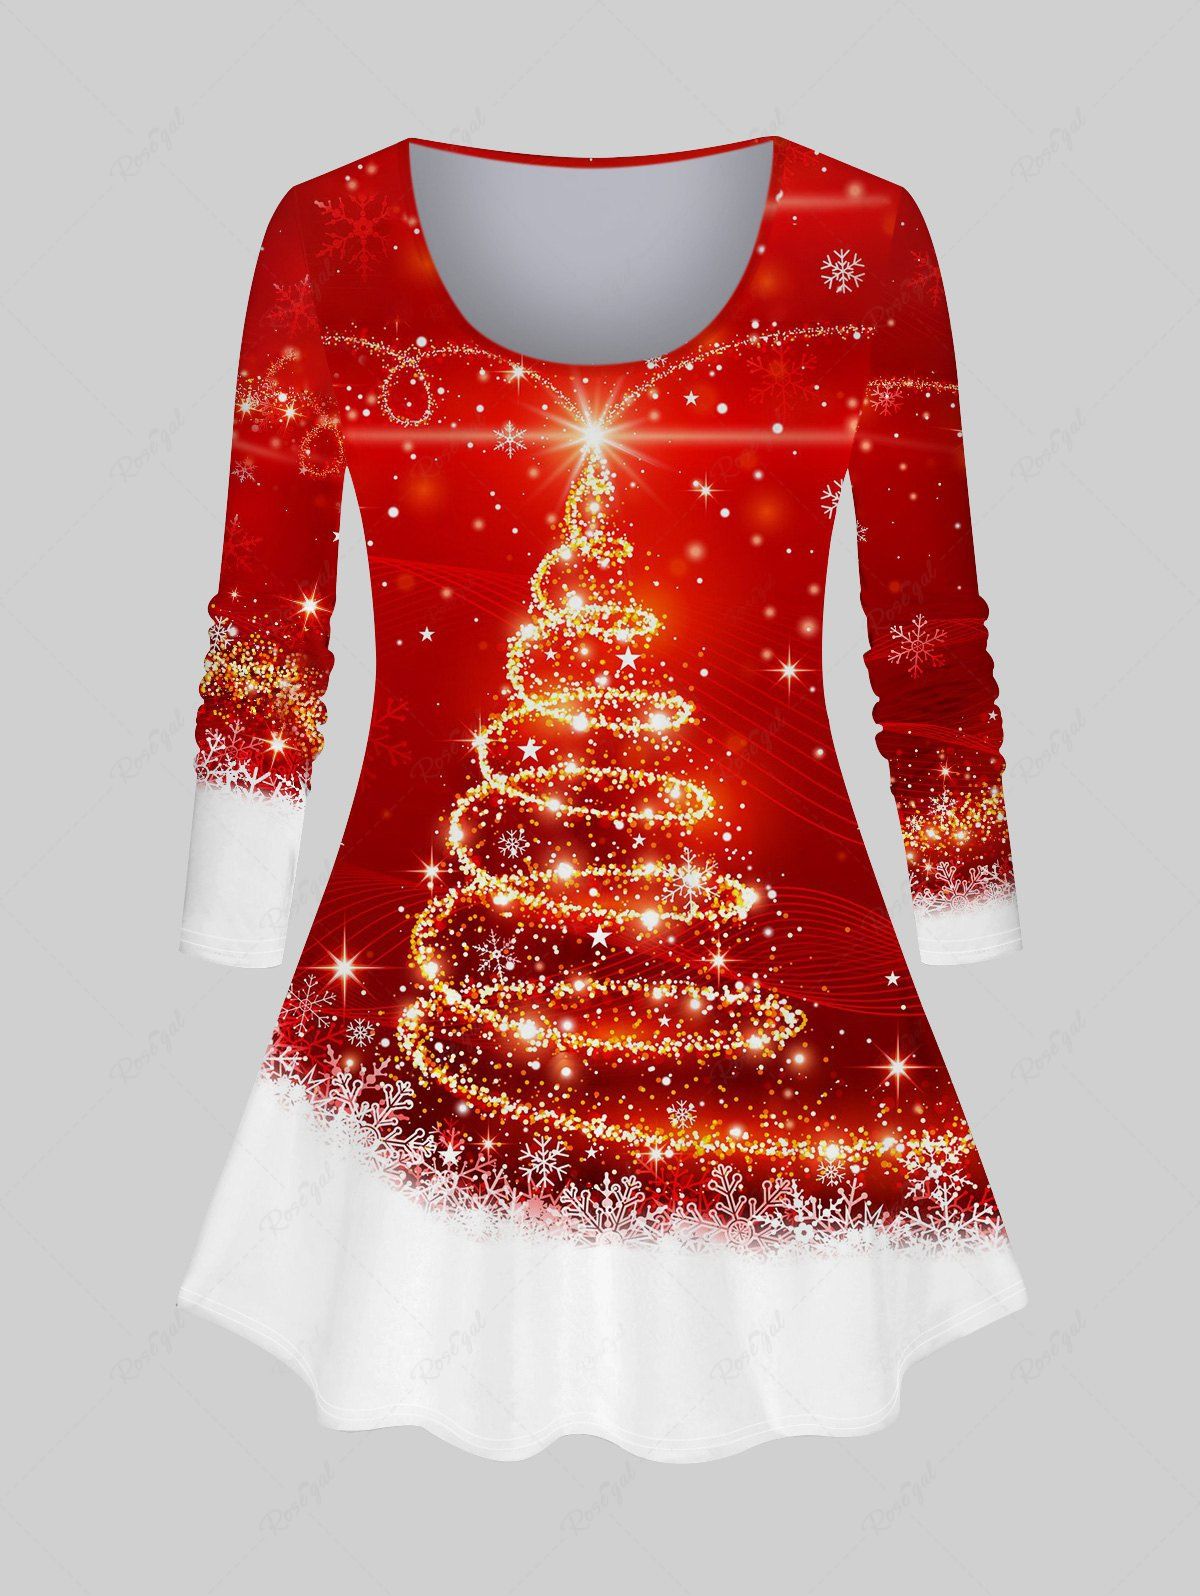 T-shirt Brillant Flocon de Neige et Sapin de Noël Imprimés de Grande Taille à Manches Longues Rouge 5X